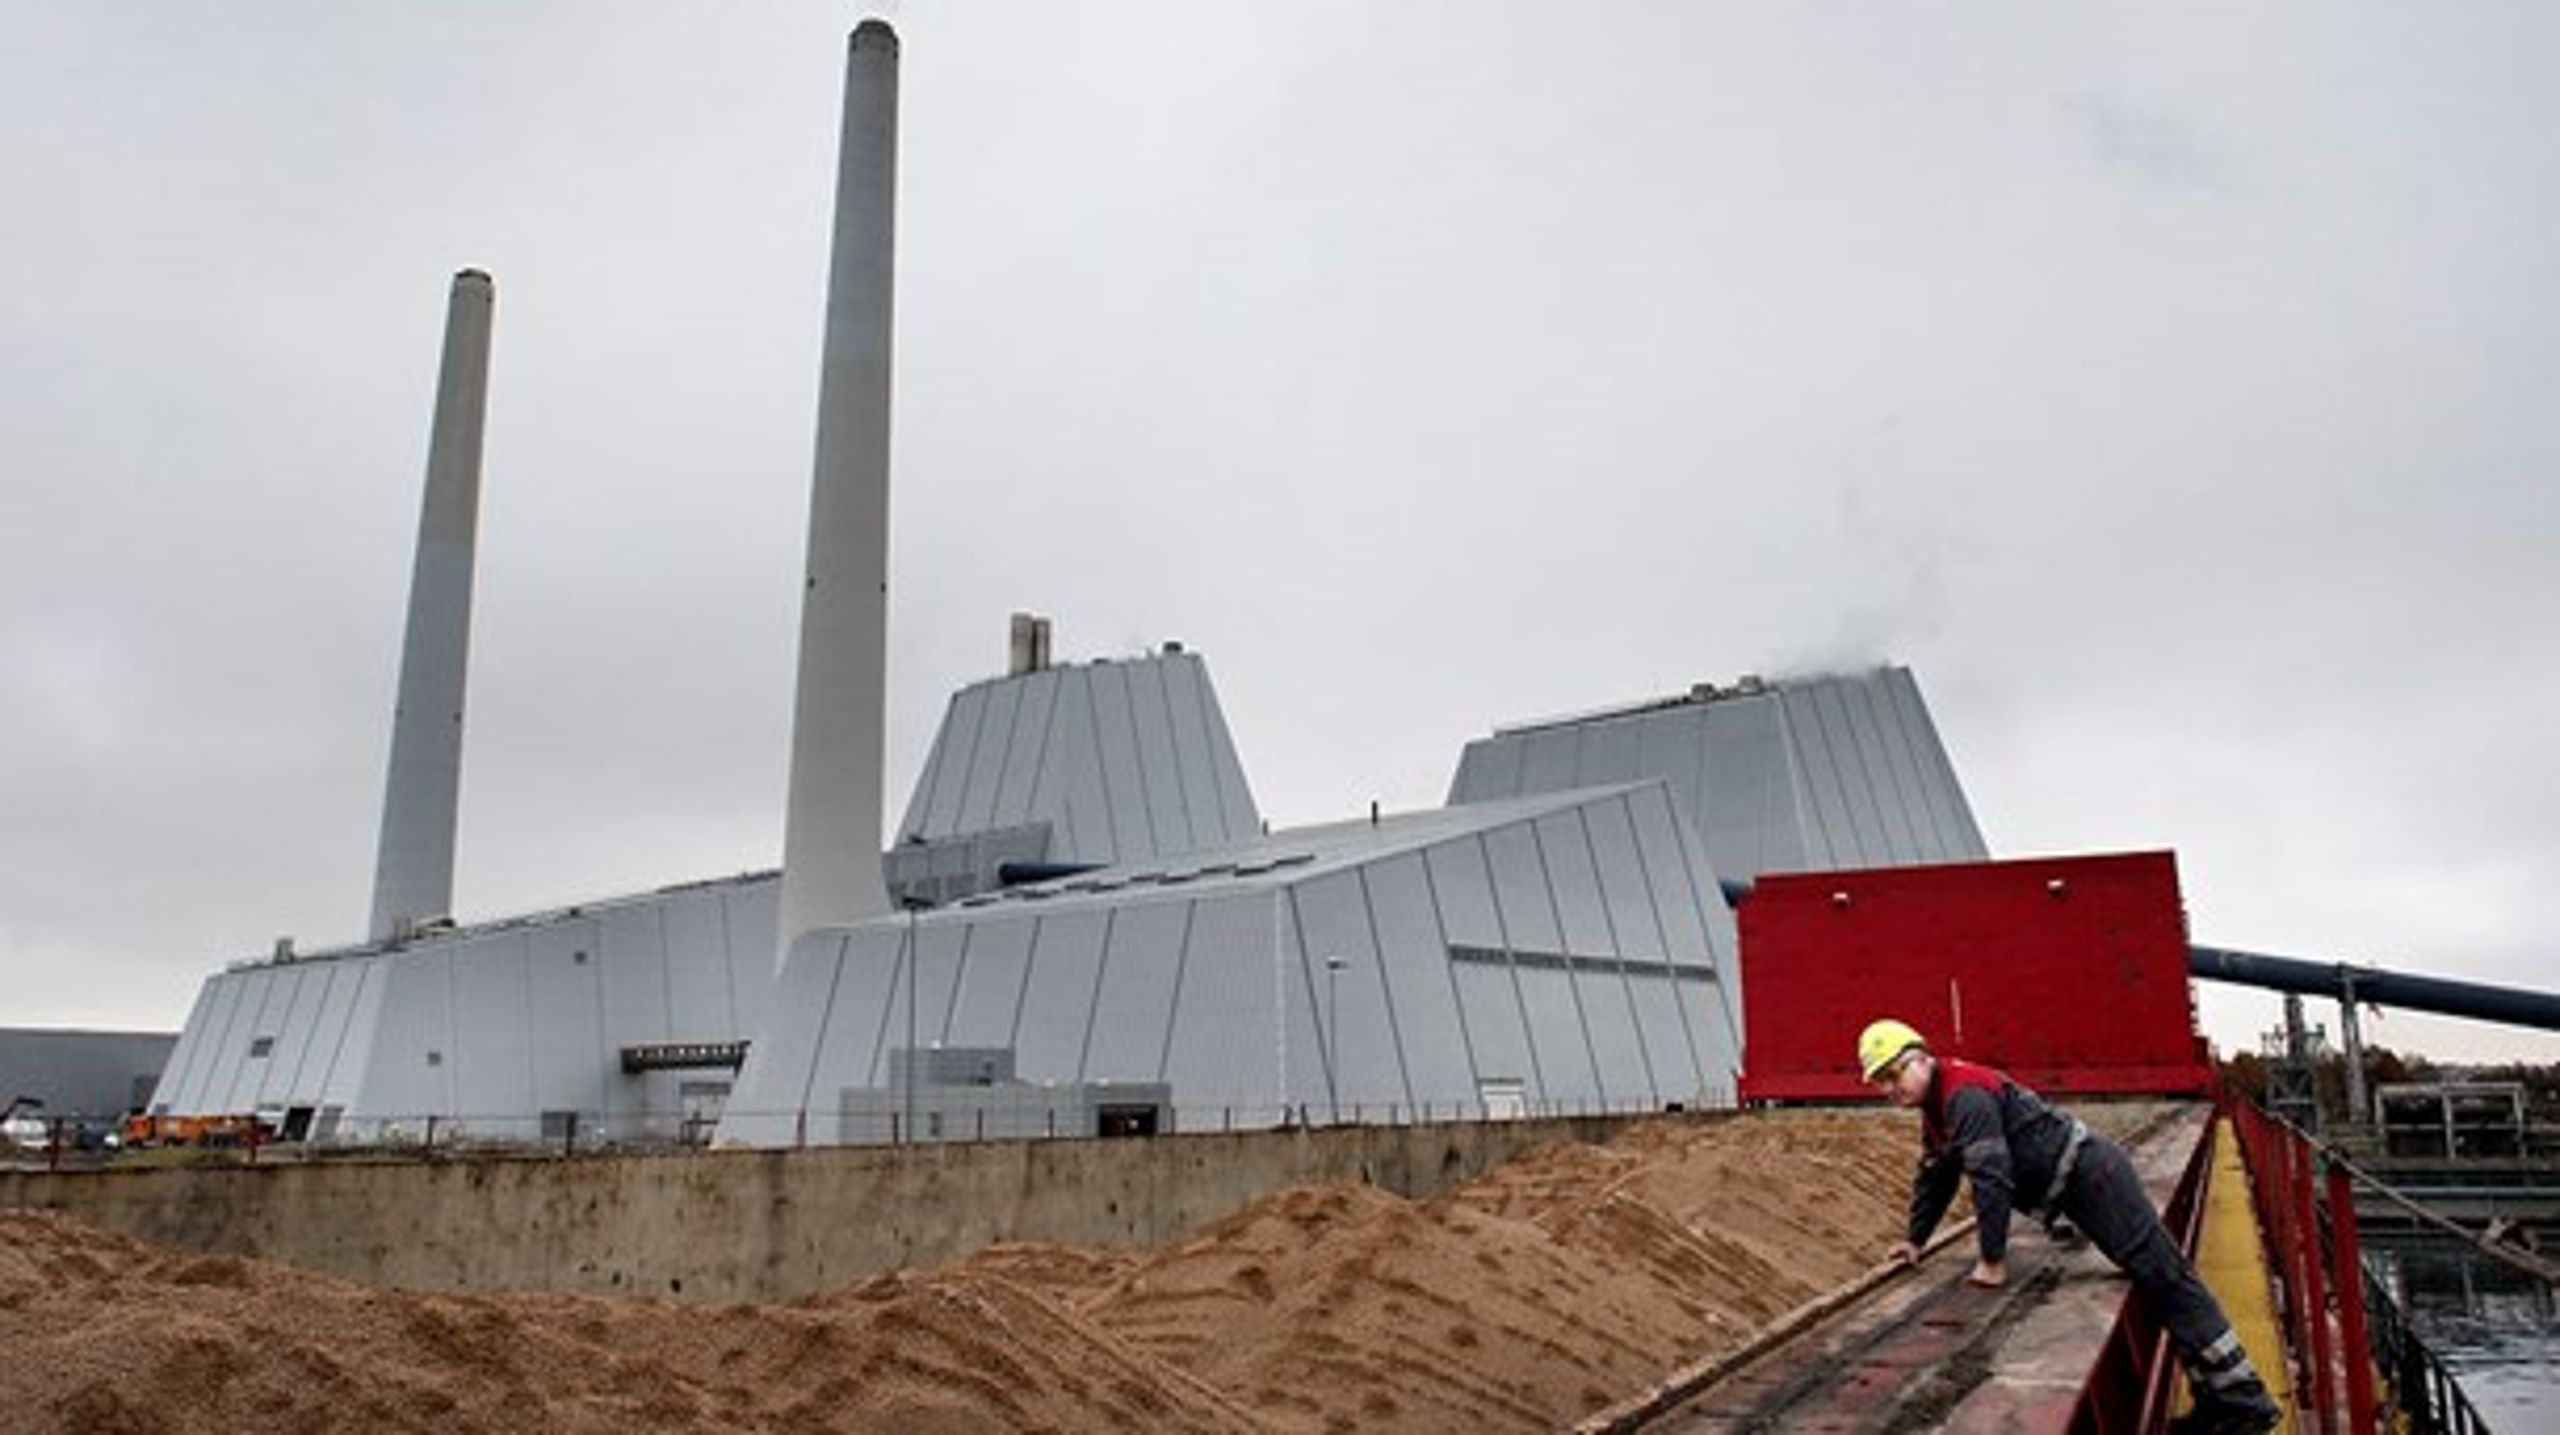 Avedørekraftværket er blevet omdannet til et biomassefyret kraftværk der bruger træpiller. Arkivfoto.